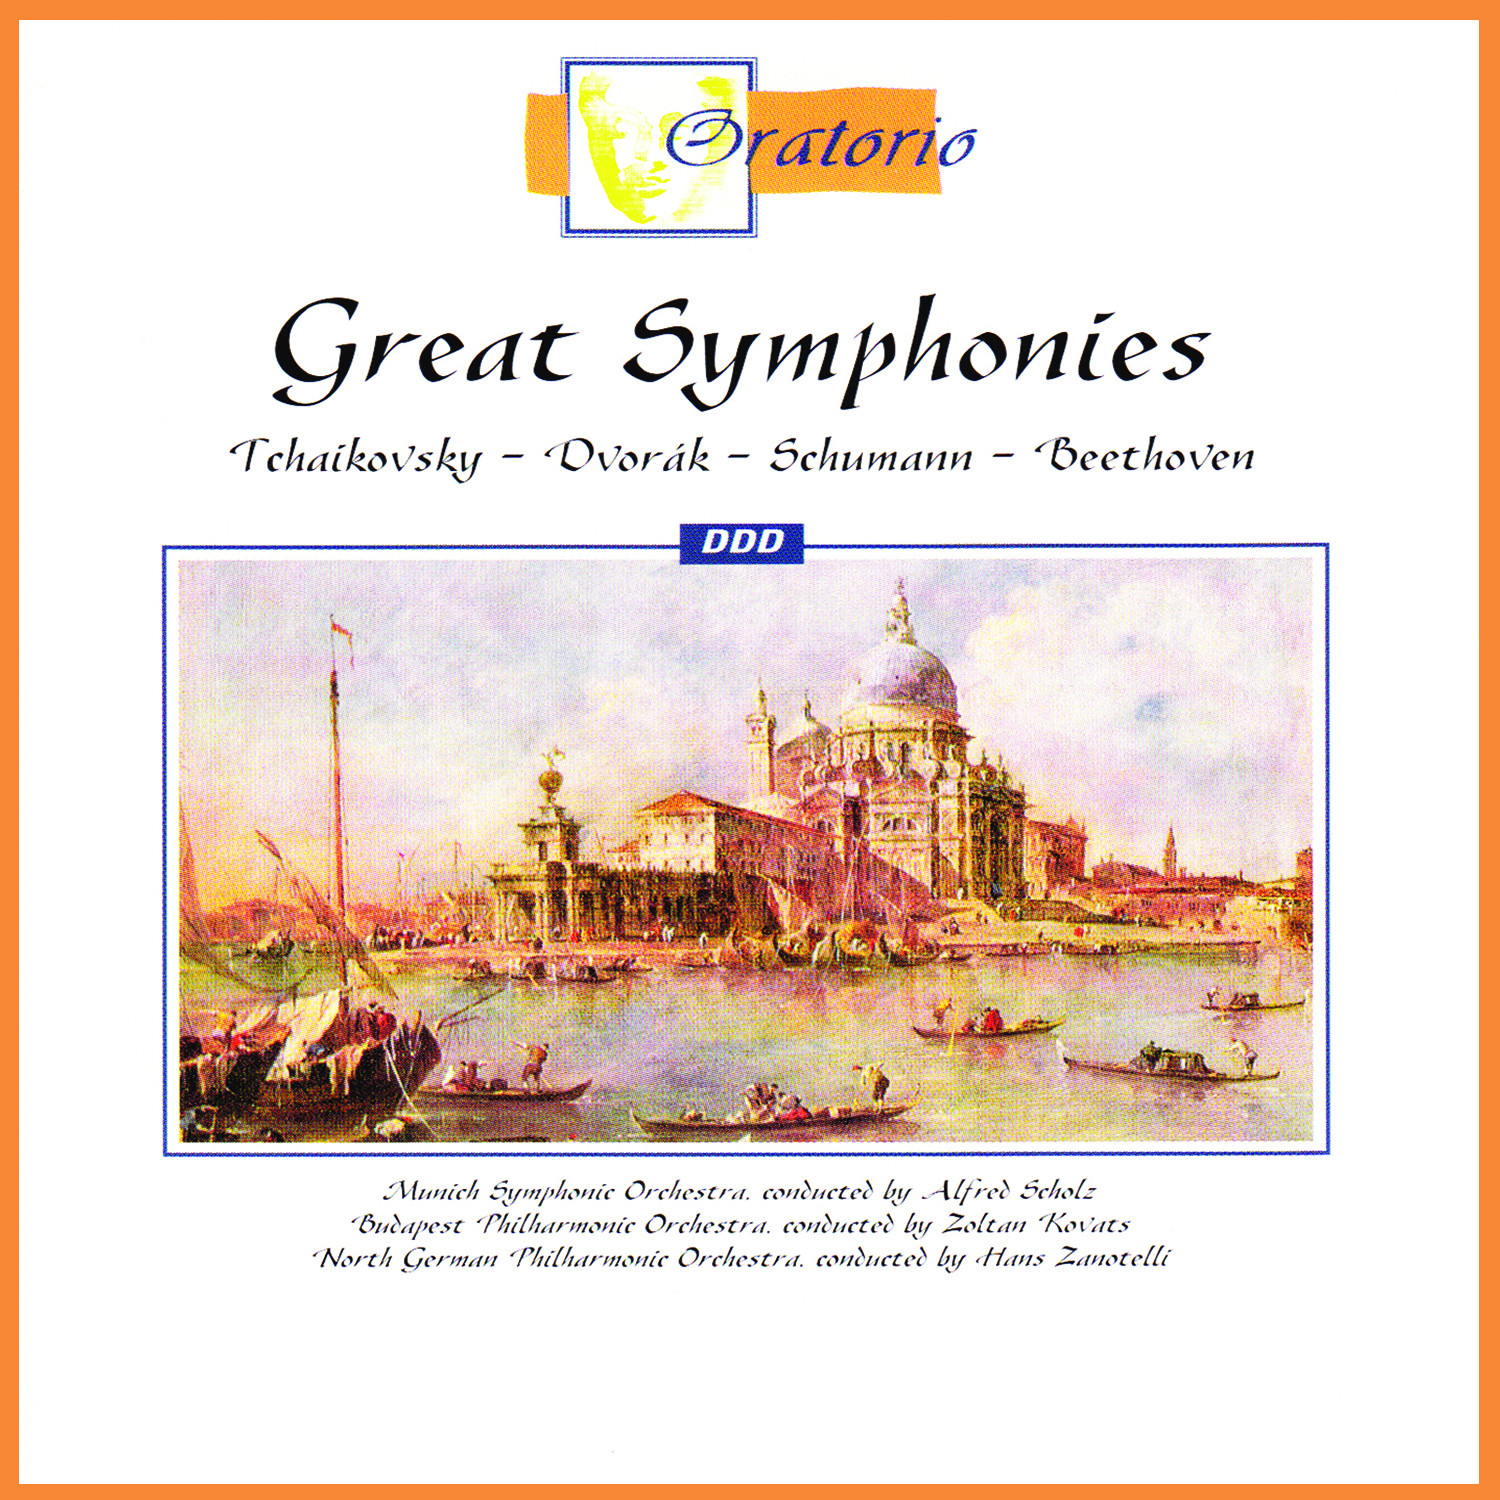 Symphony No.6 in B Minor, Op. 74: 'Pathetique' - Allegro Molto Vivace